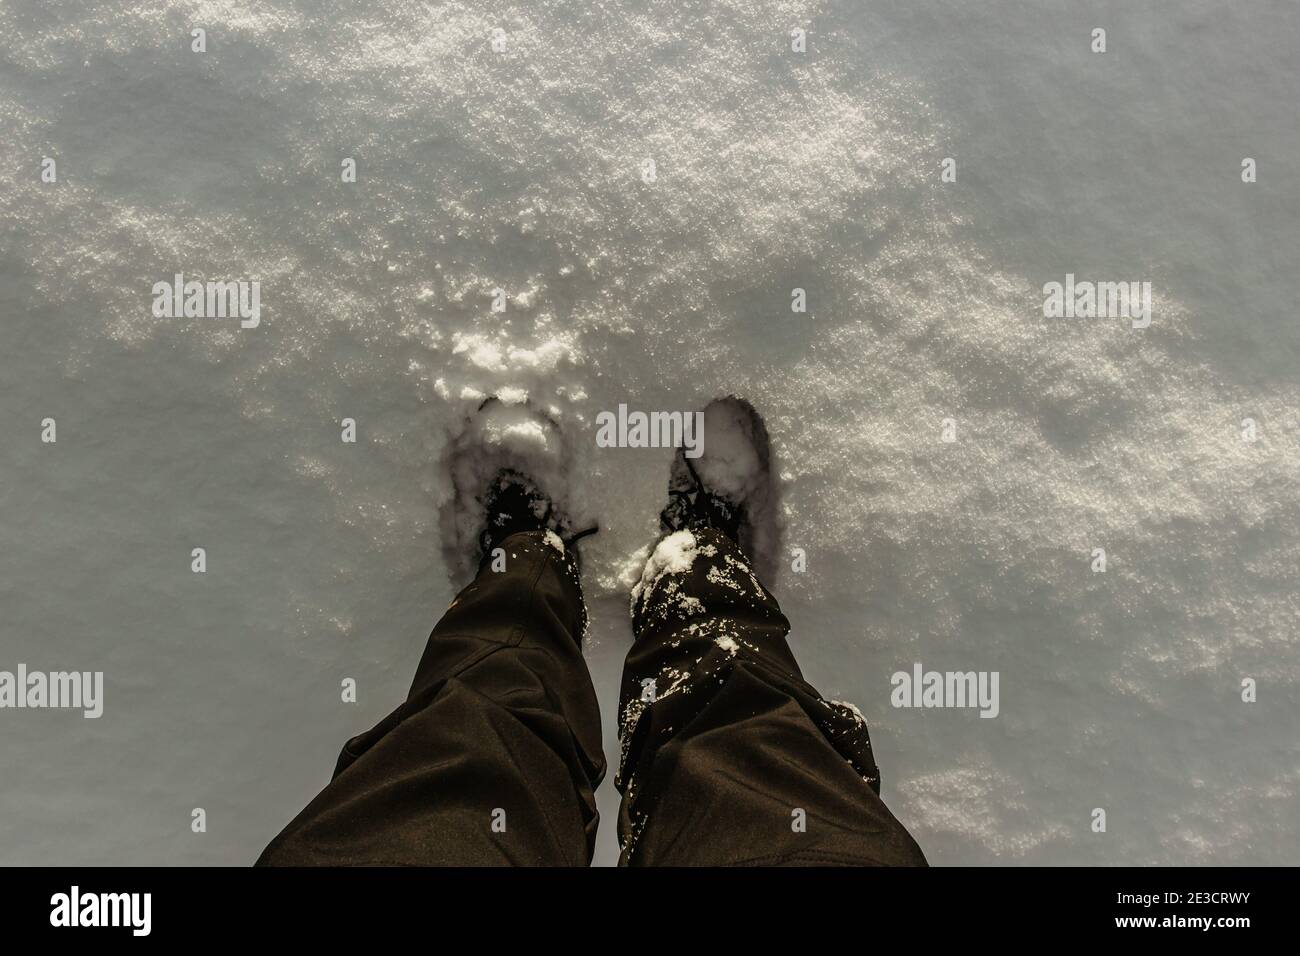 Dettaglio di stivali caldi e impermeabili in neve fresca profonda.piedi femminili in scarpe nere, passeggiata invernale in neve.Vista ad alto angolo delle gambe femminili in piedi Foto Stock